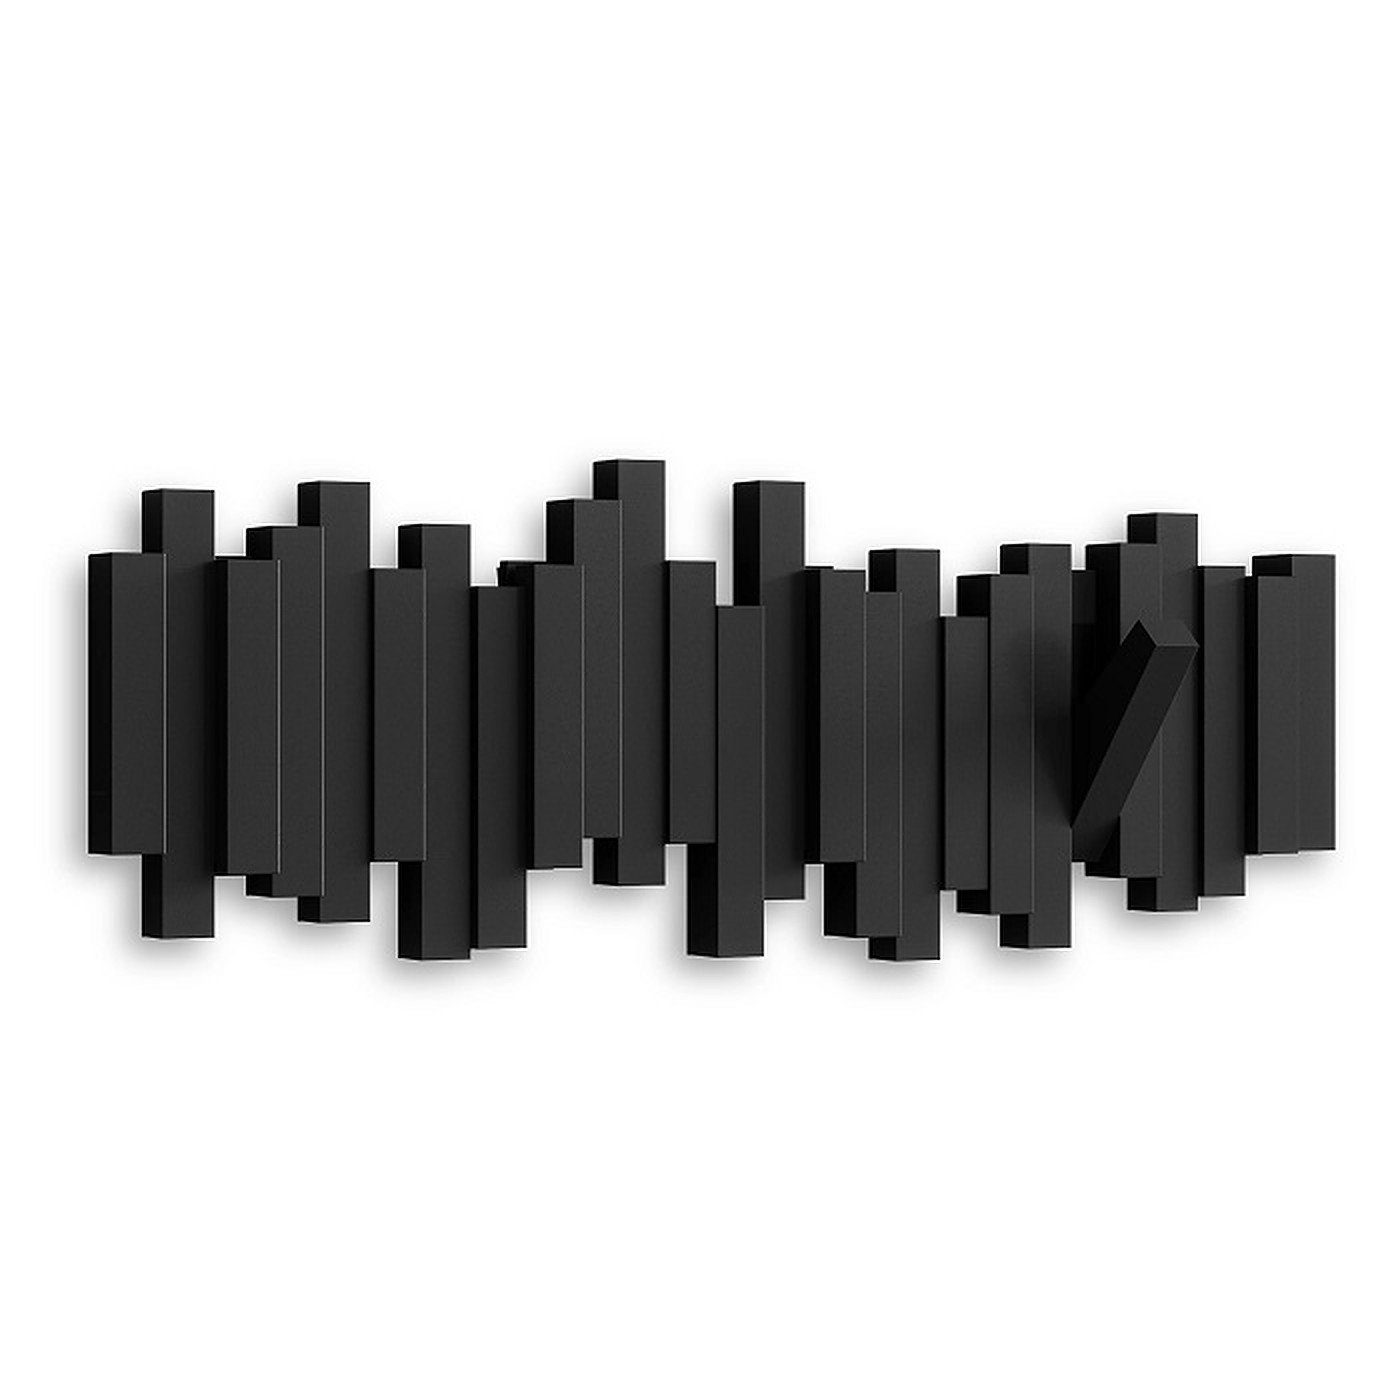 Umbra Haken, Garderobenleiste Haken HOOK schwarz STICKS platzsparende 5 Multi Garderobenleiste bewegliche 5 mit